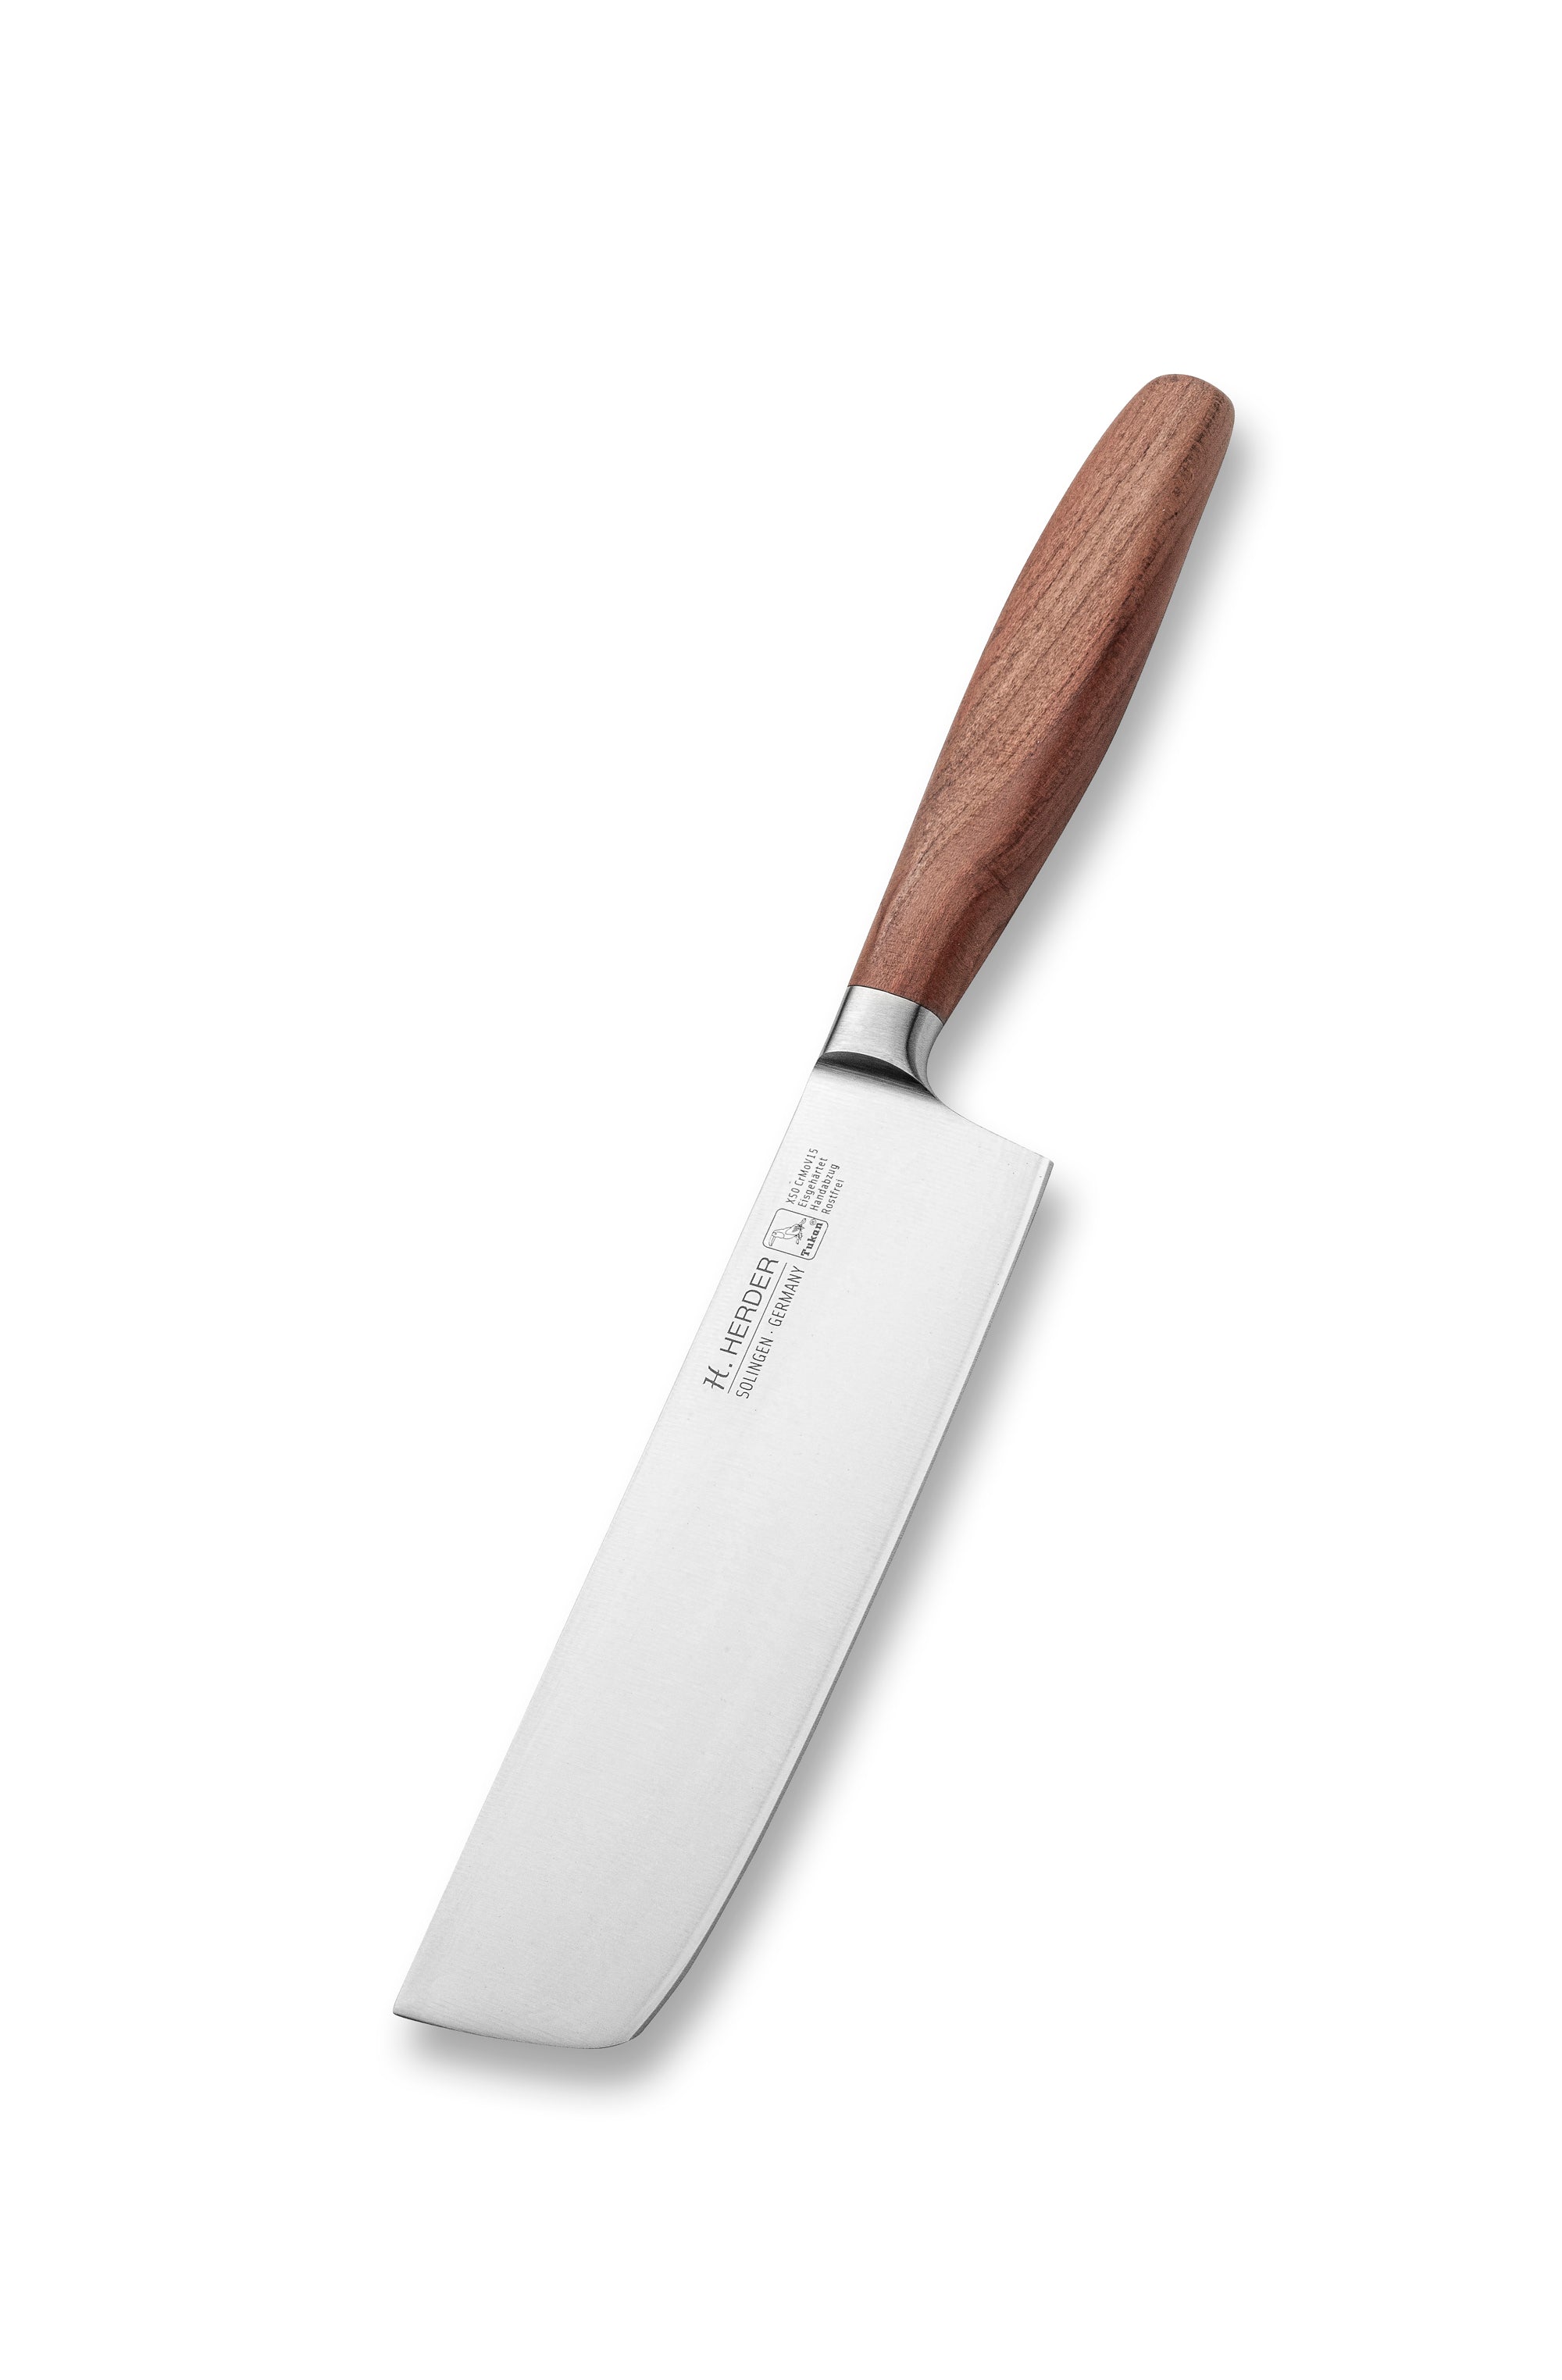 Cuchillo Nakiri Eterno, madera de ciruelo, longitud de la hoja 17cm, forjado